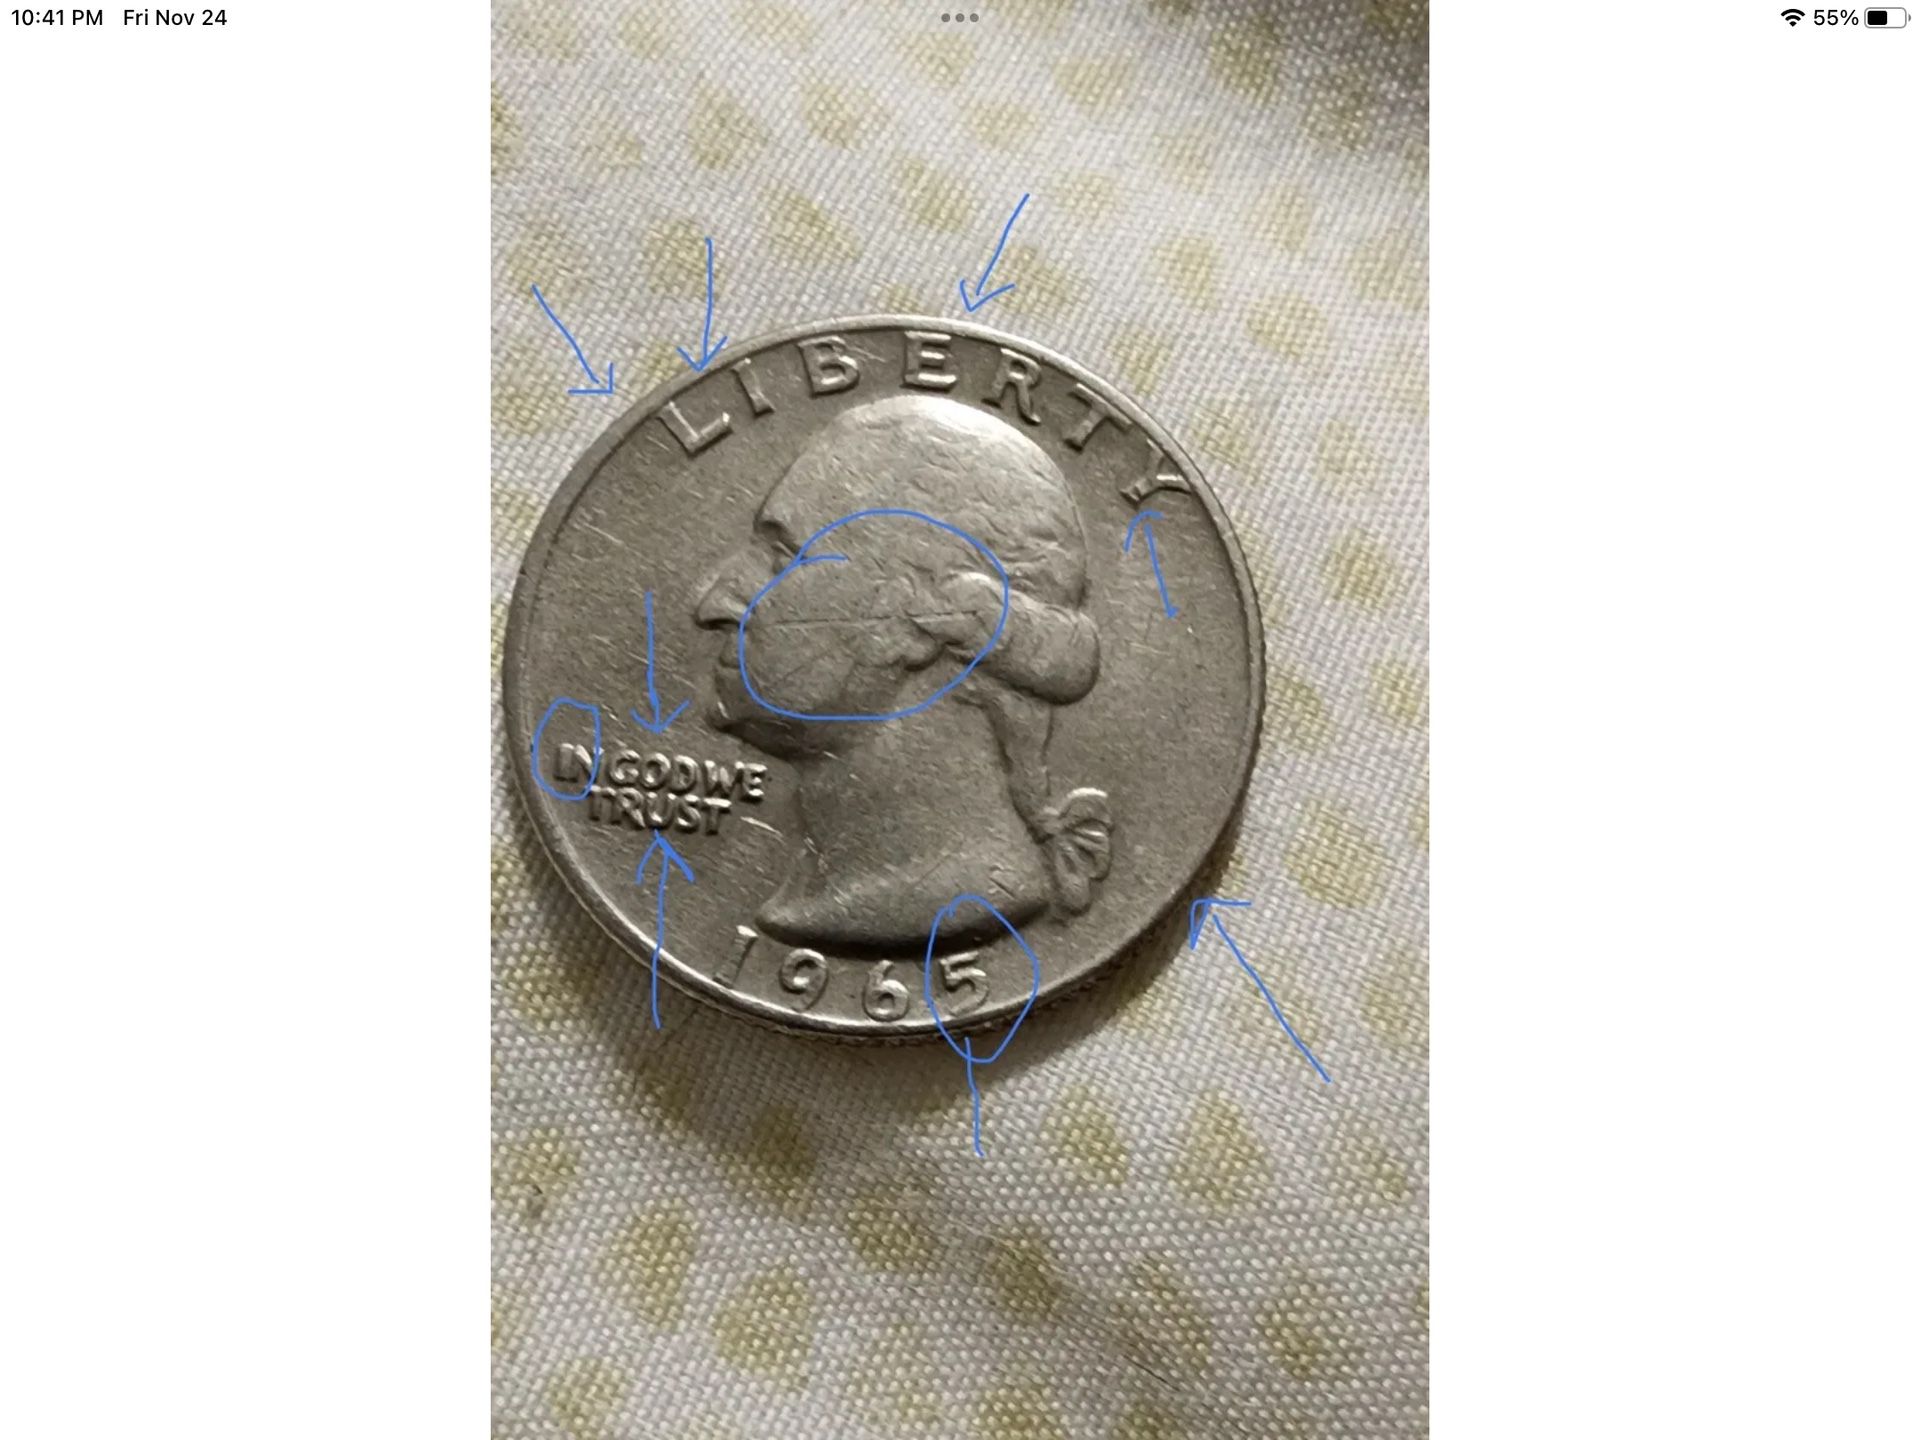 *EXTREMELY RARE* 1965 Washington Quarter(Multiple Errors & No Mint Mark!)